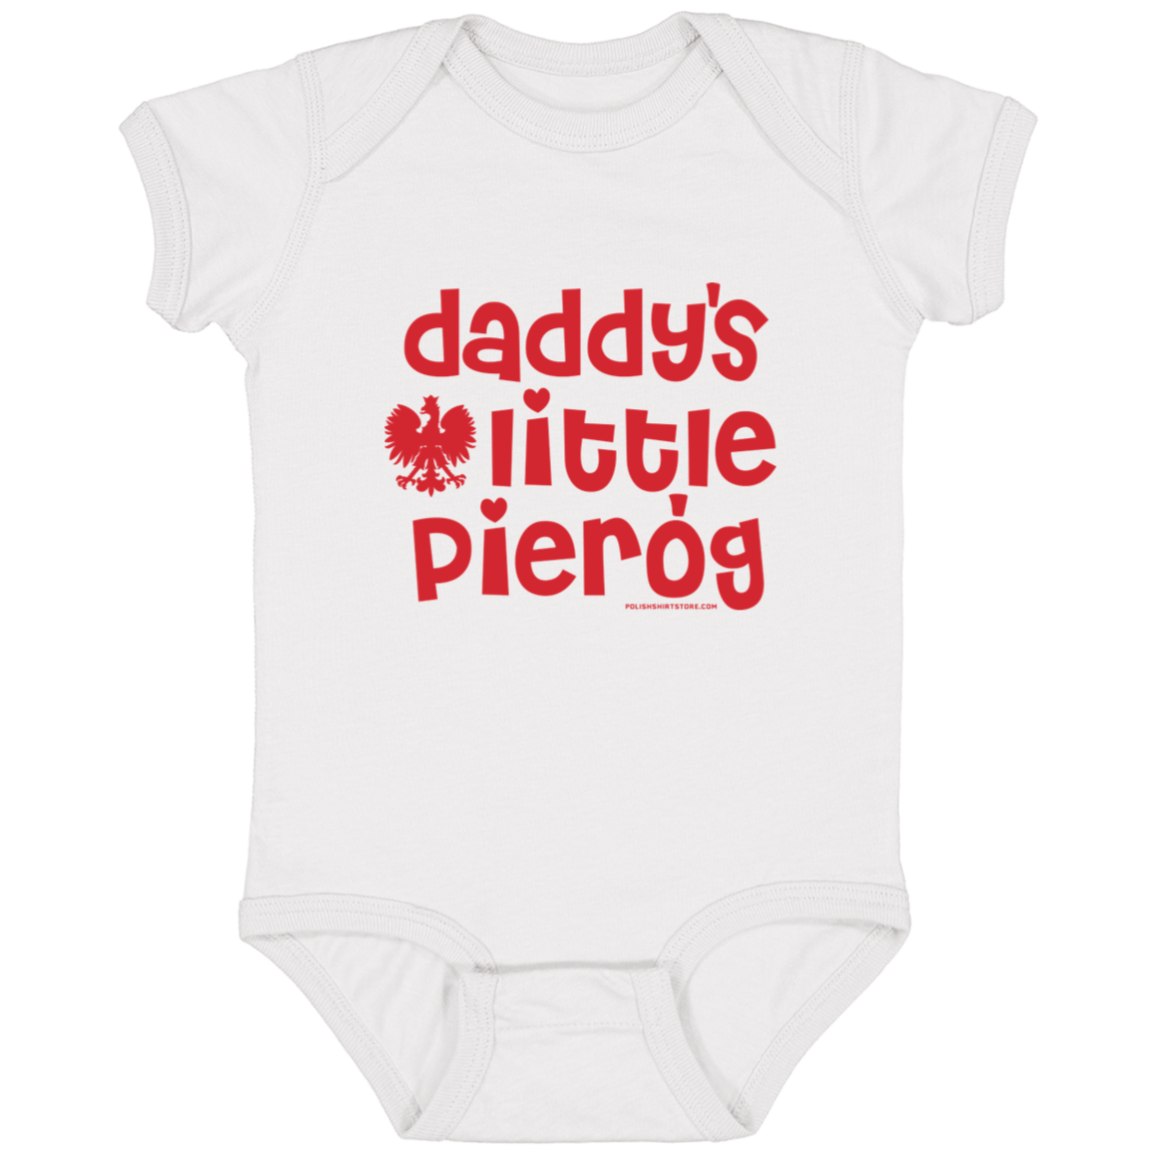 Daddy's Little Pierogi Infant Bodysuit Baby CustomCat White Newborn 